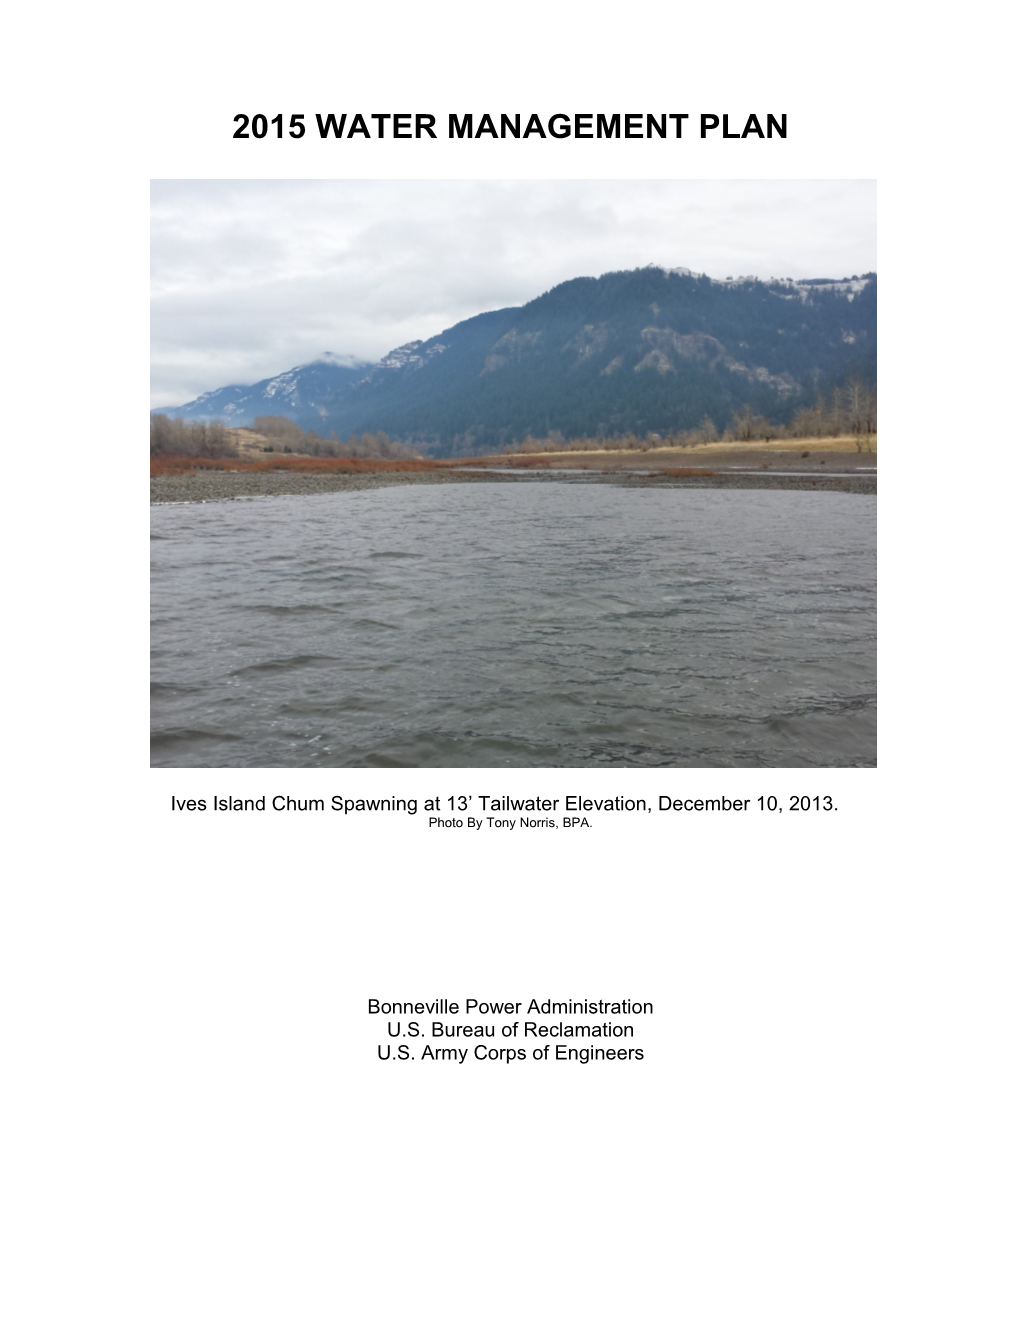 Draft 2014 Water Management Plan